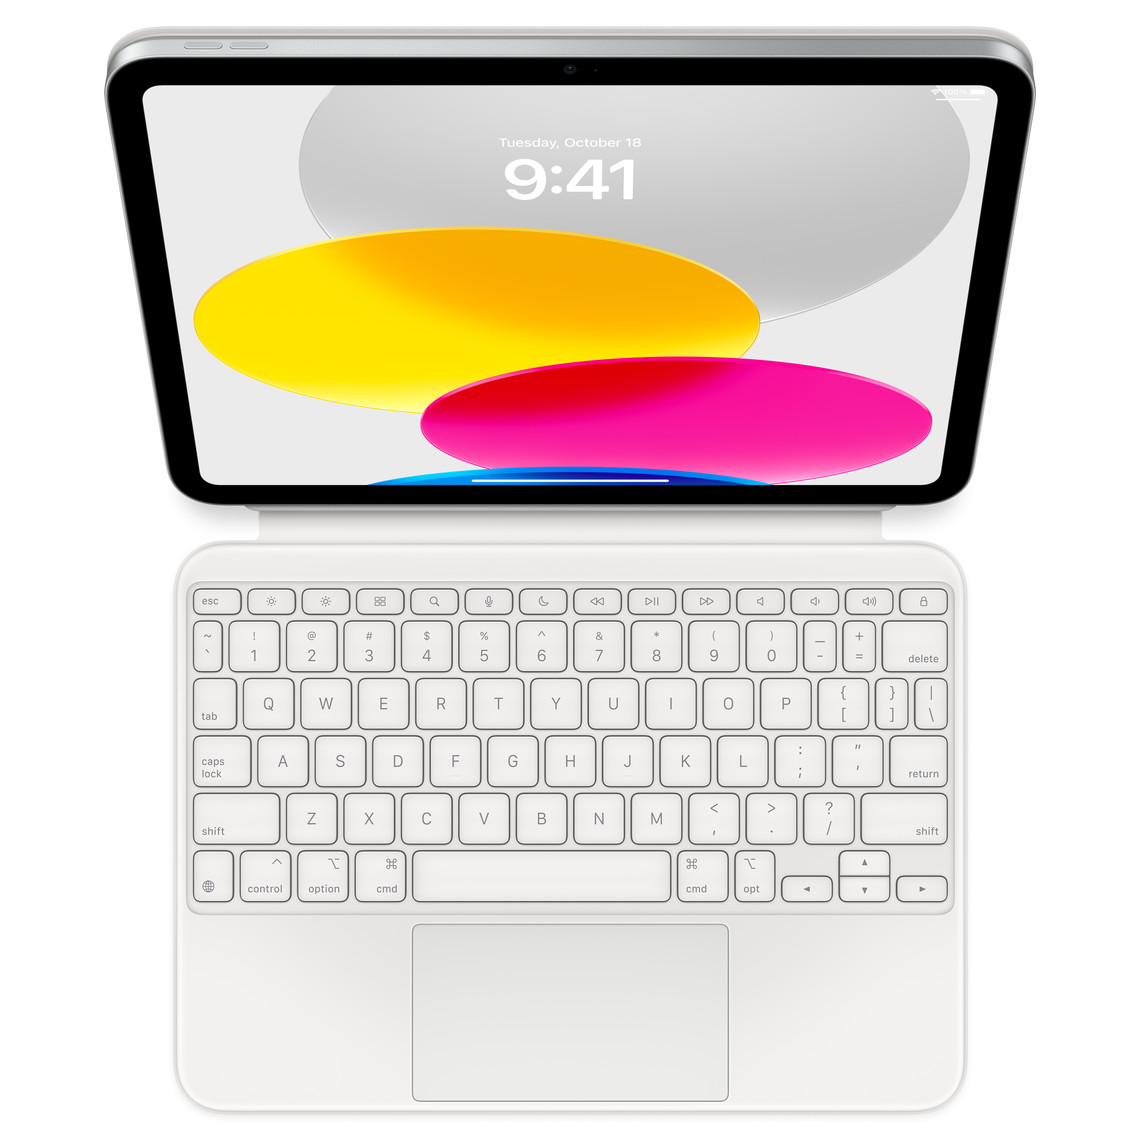 展示 iPad 連接平放的巧控鍵盤雙面夾的俯視圖螢幕顯示不同顏色的圓形圖案